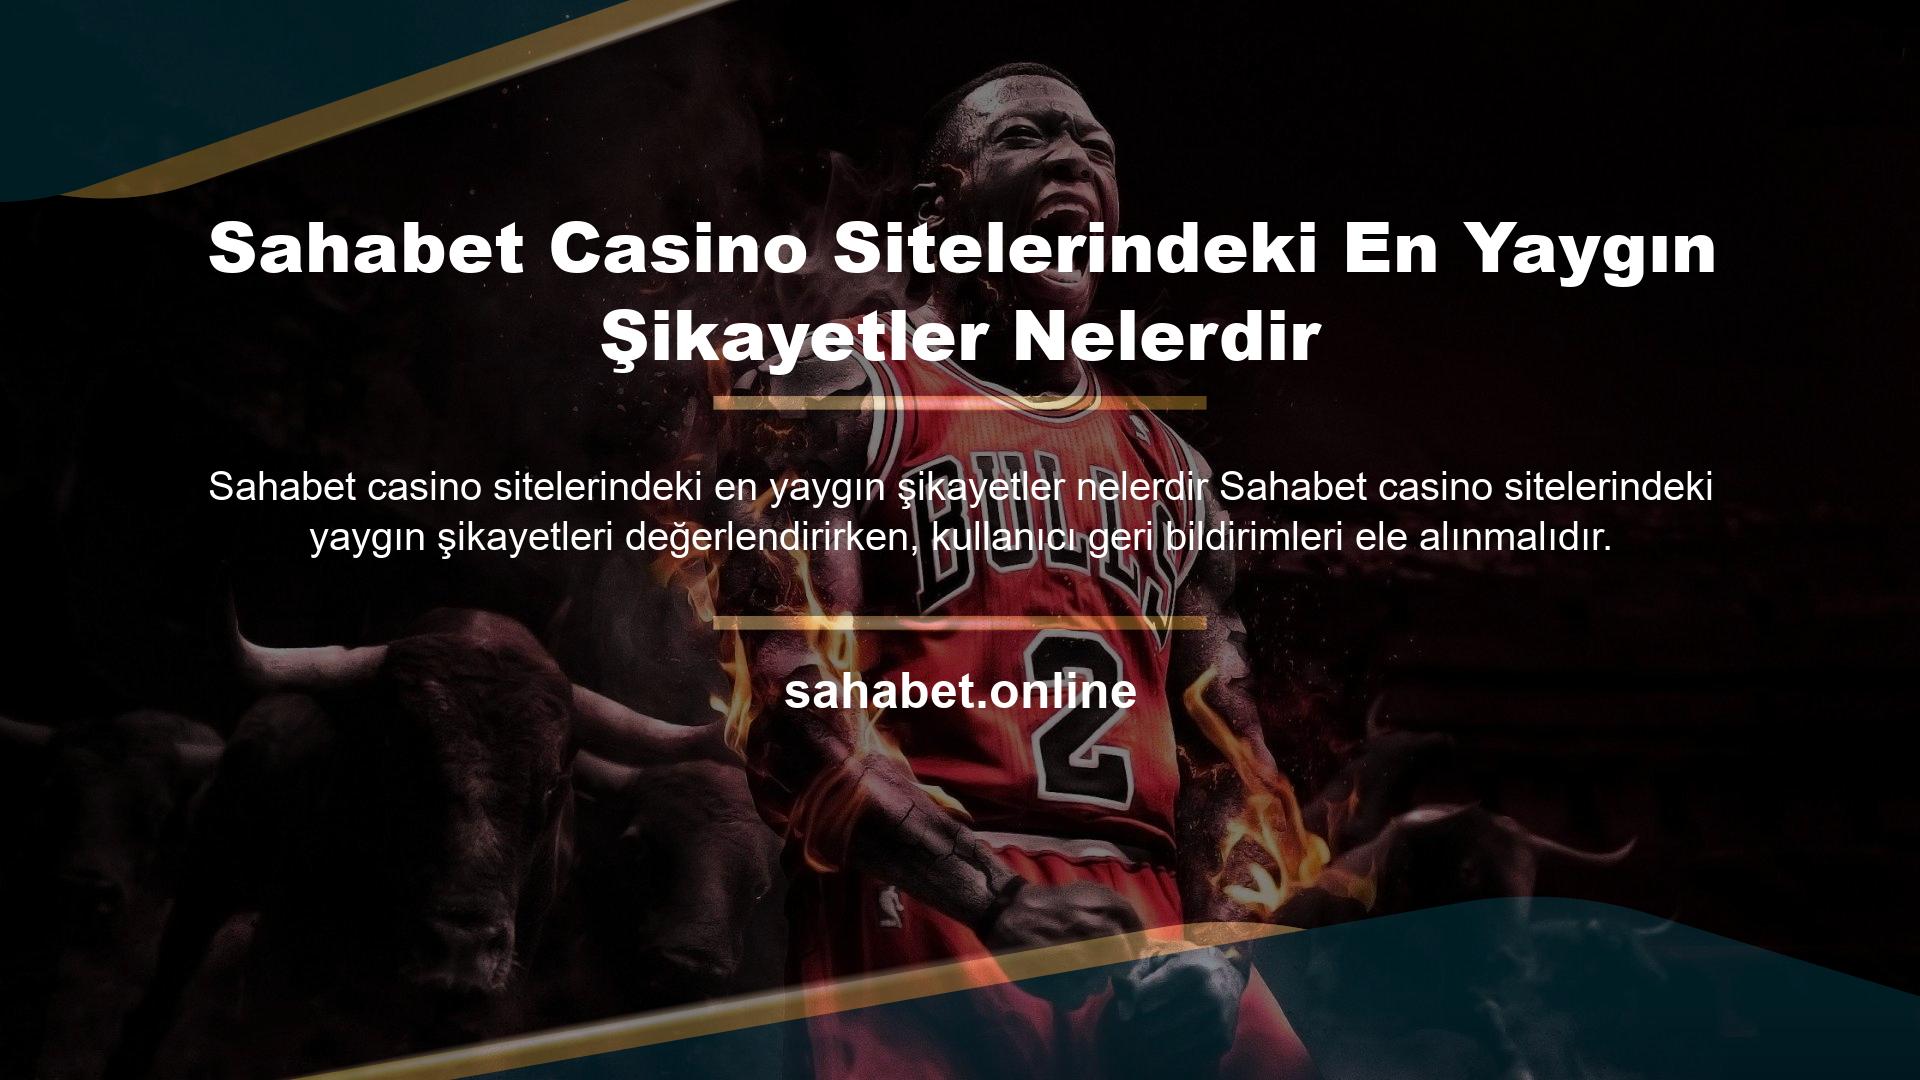 Sahabet Casino Sitelerindeki En Yaygın Şikayetler Nelerdir